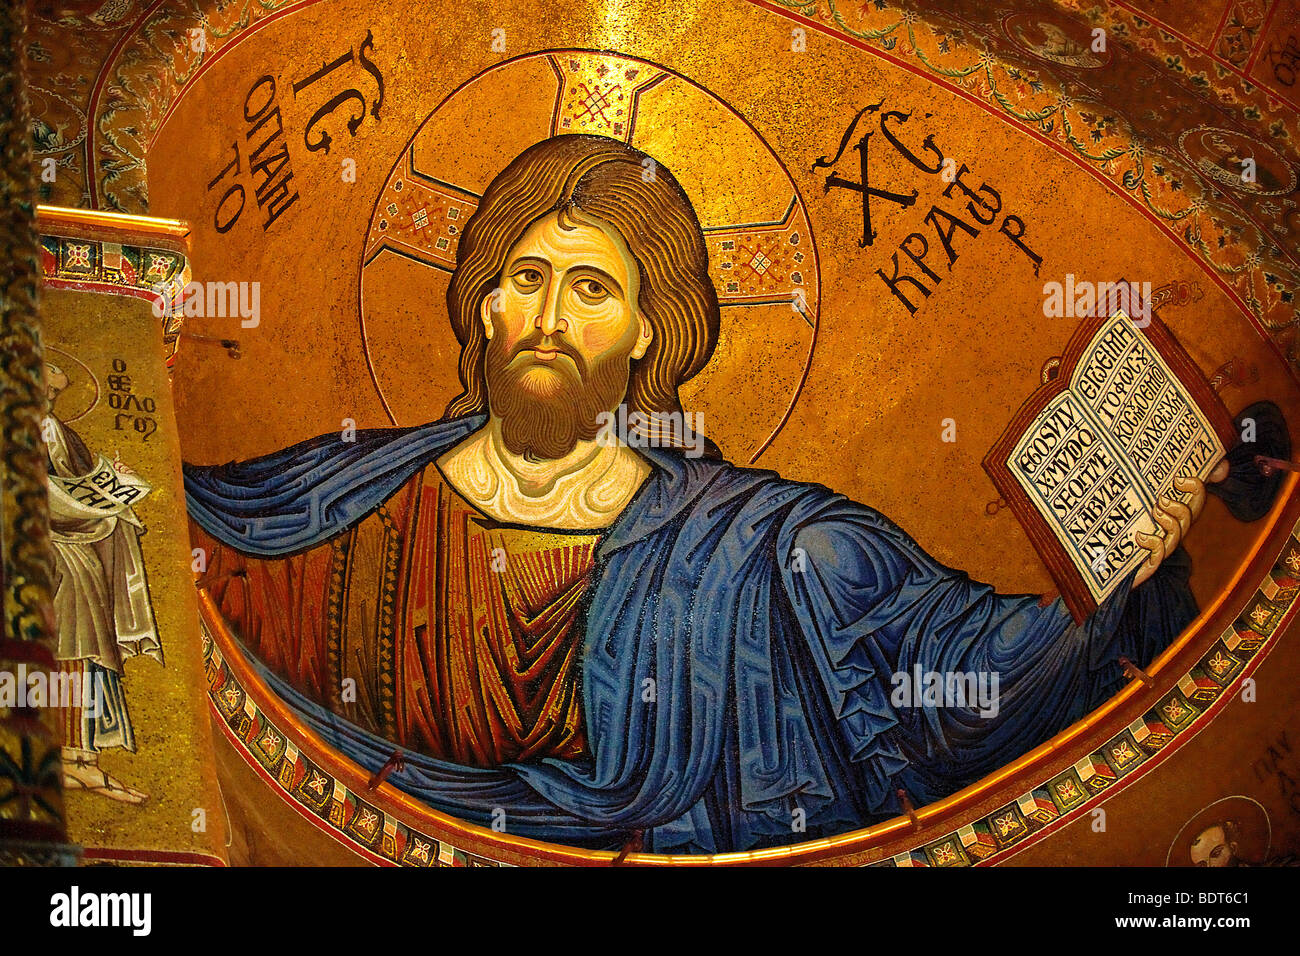 Des mosaïques byzantines de Jésus Christ dans la cathédrale de Monreale - Palerme - Sicile Banque D'Images